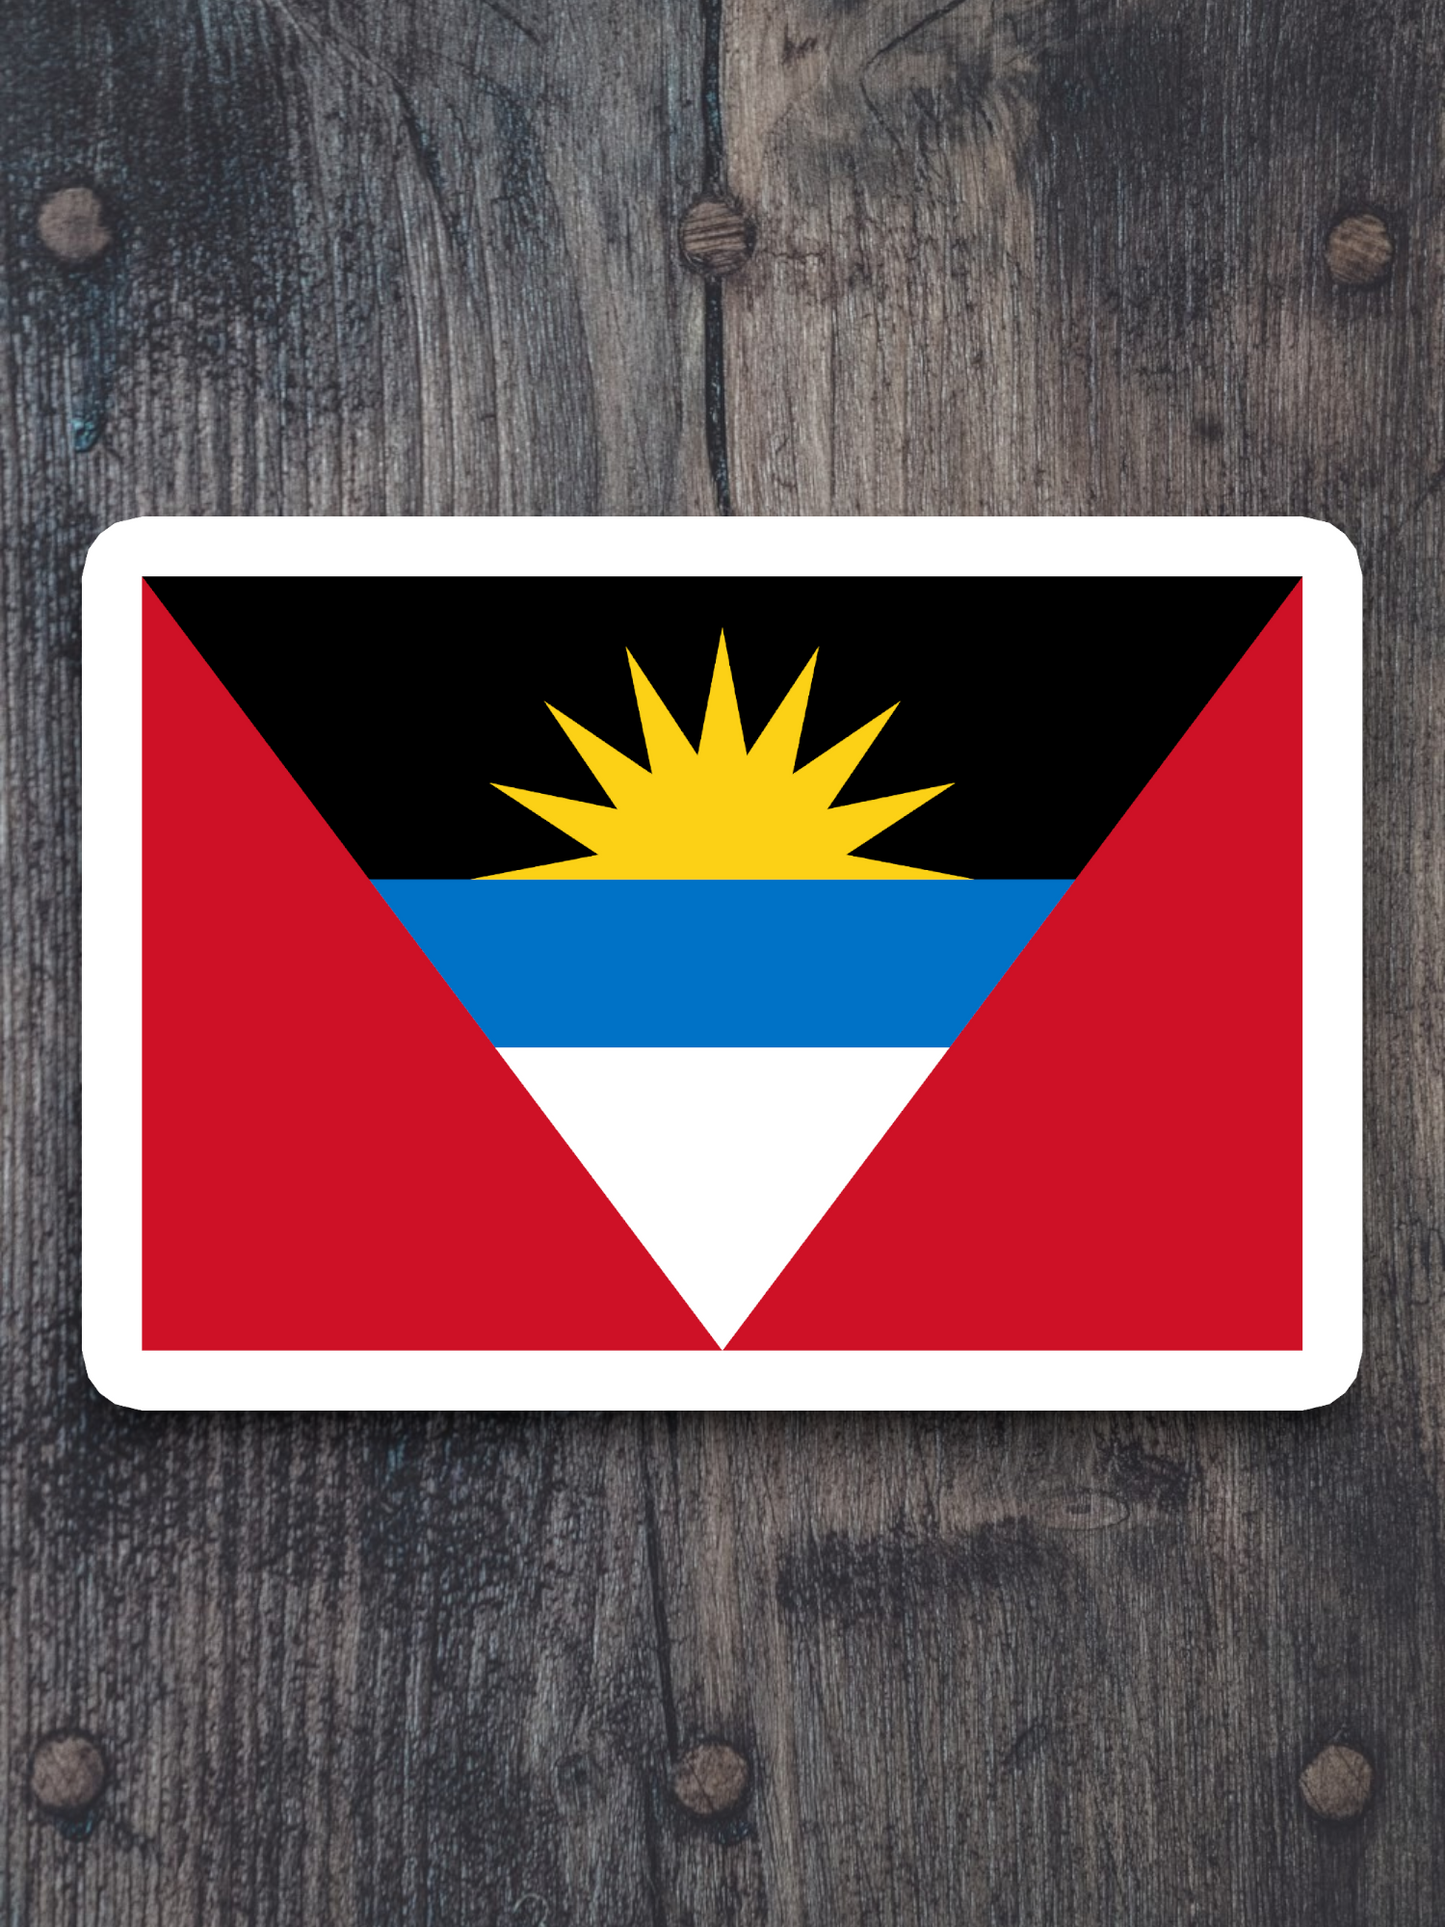 Antigua and Barbuda Flag - International Country Flag Sticker